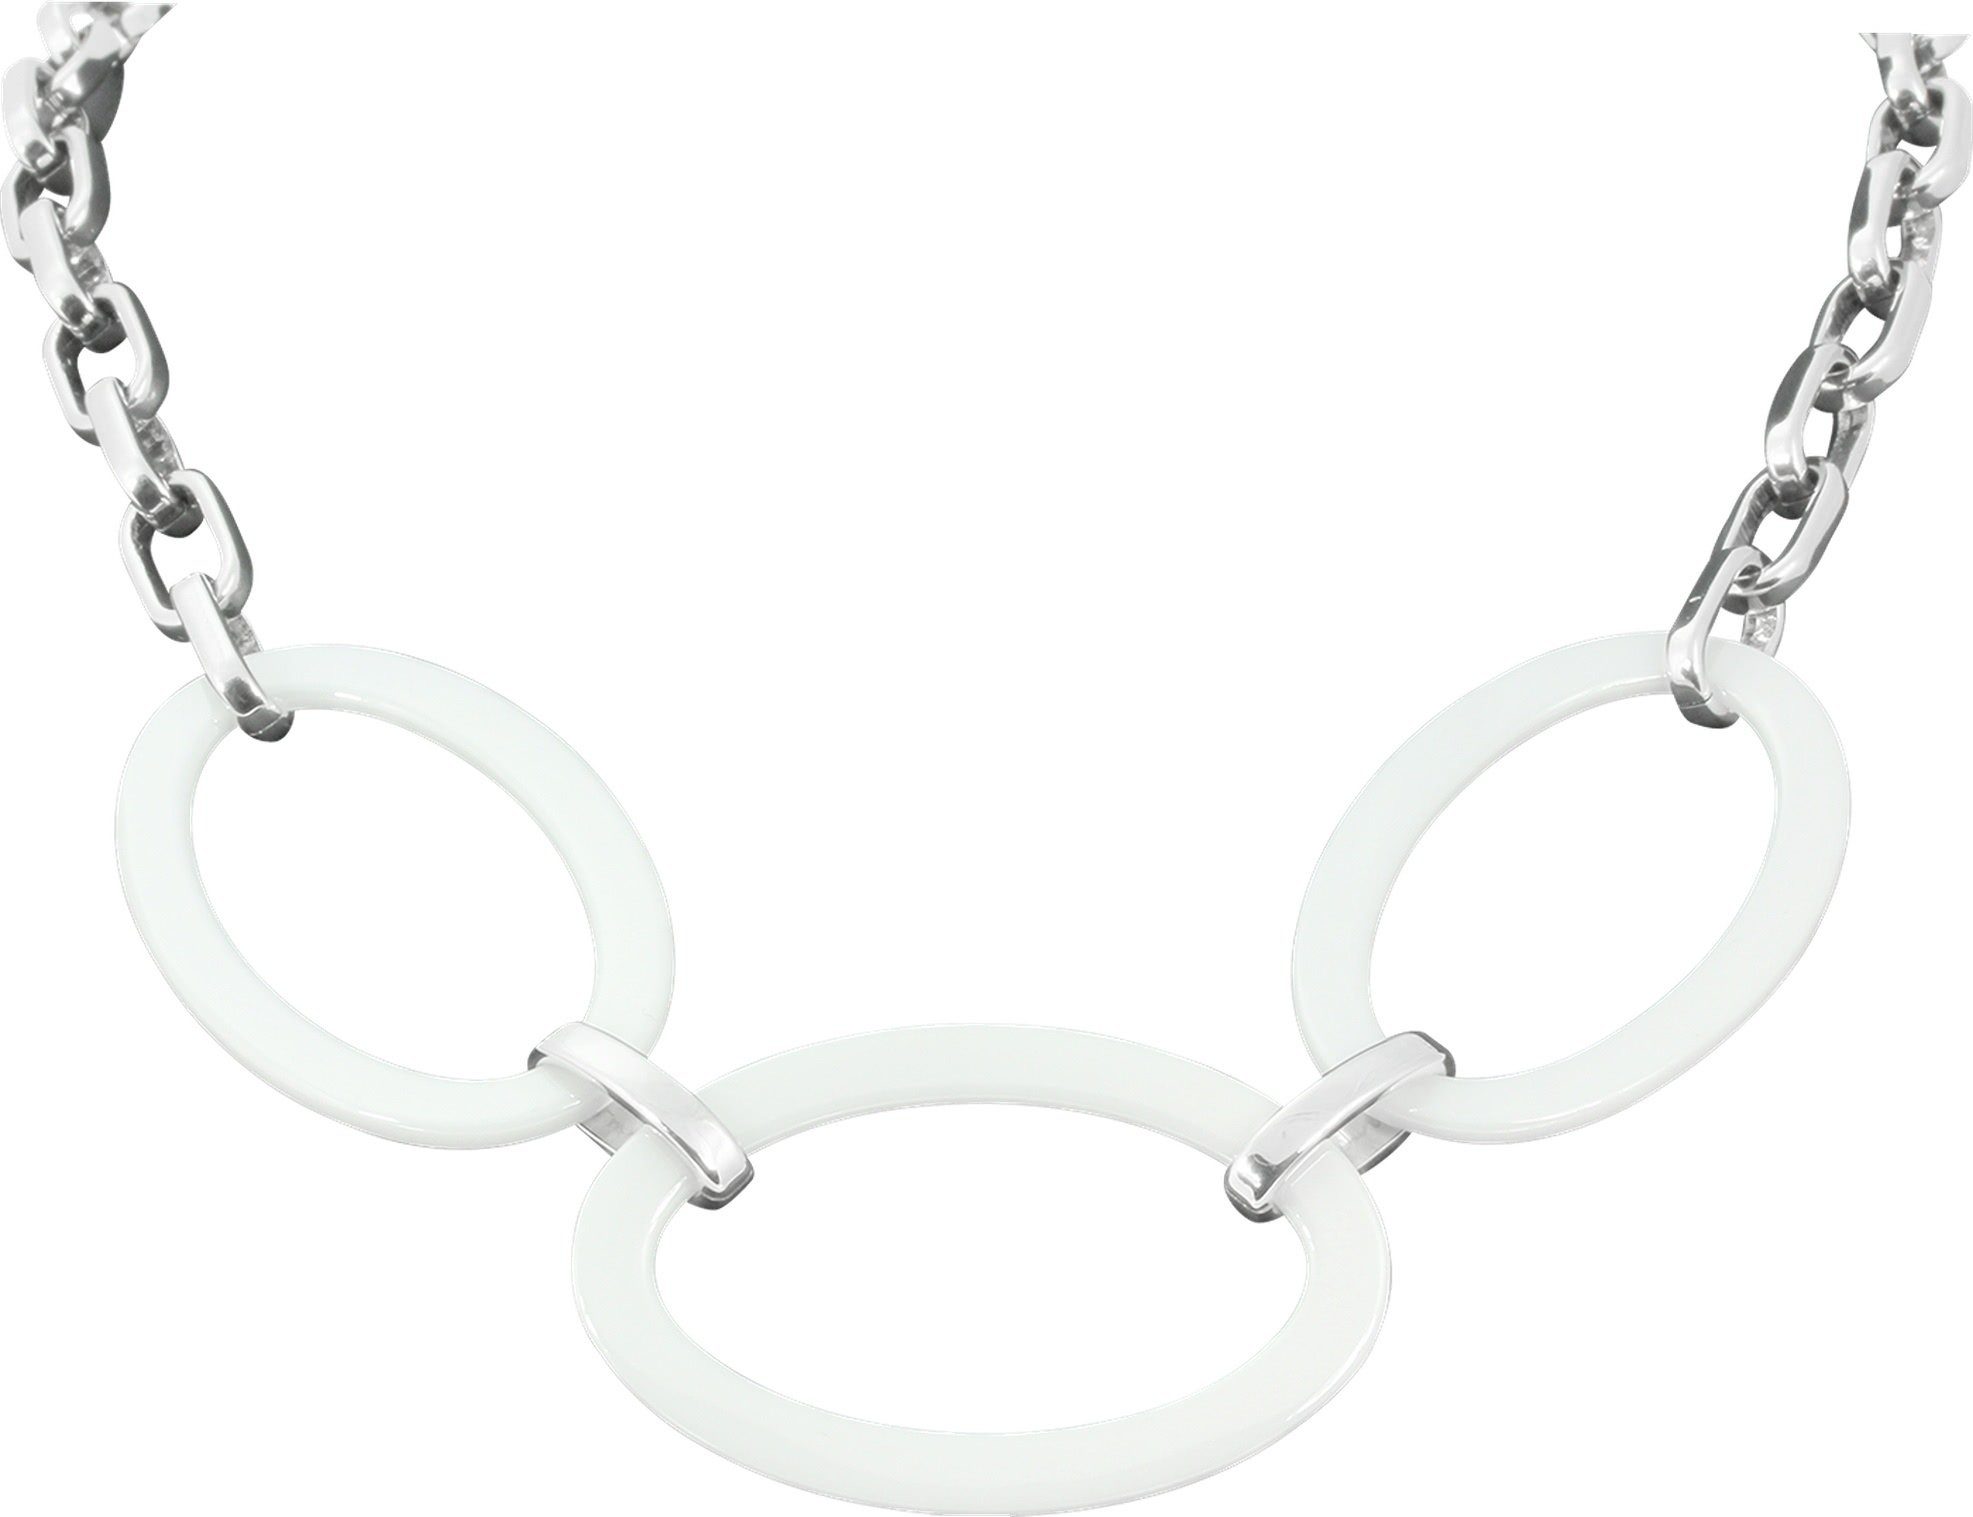 Halskette Steel) Halsketten weiß Edelstahl (Big Amello Big Oval) (Halskette), silber Amello aus Edelstahlkette Oval (Stainless Damen